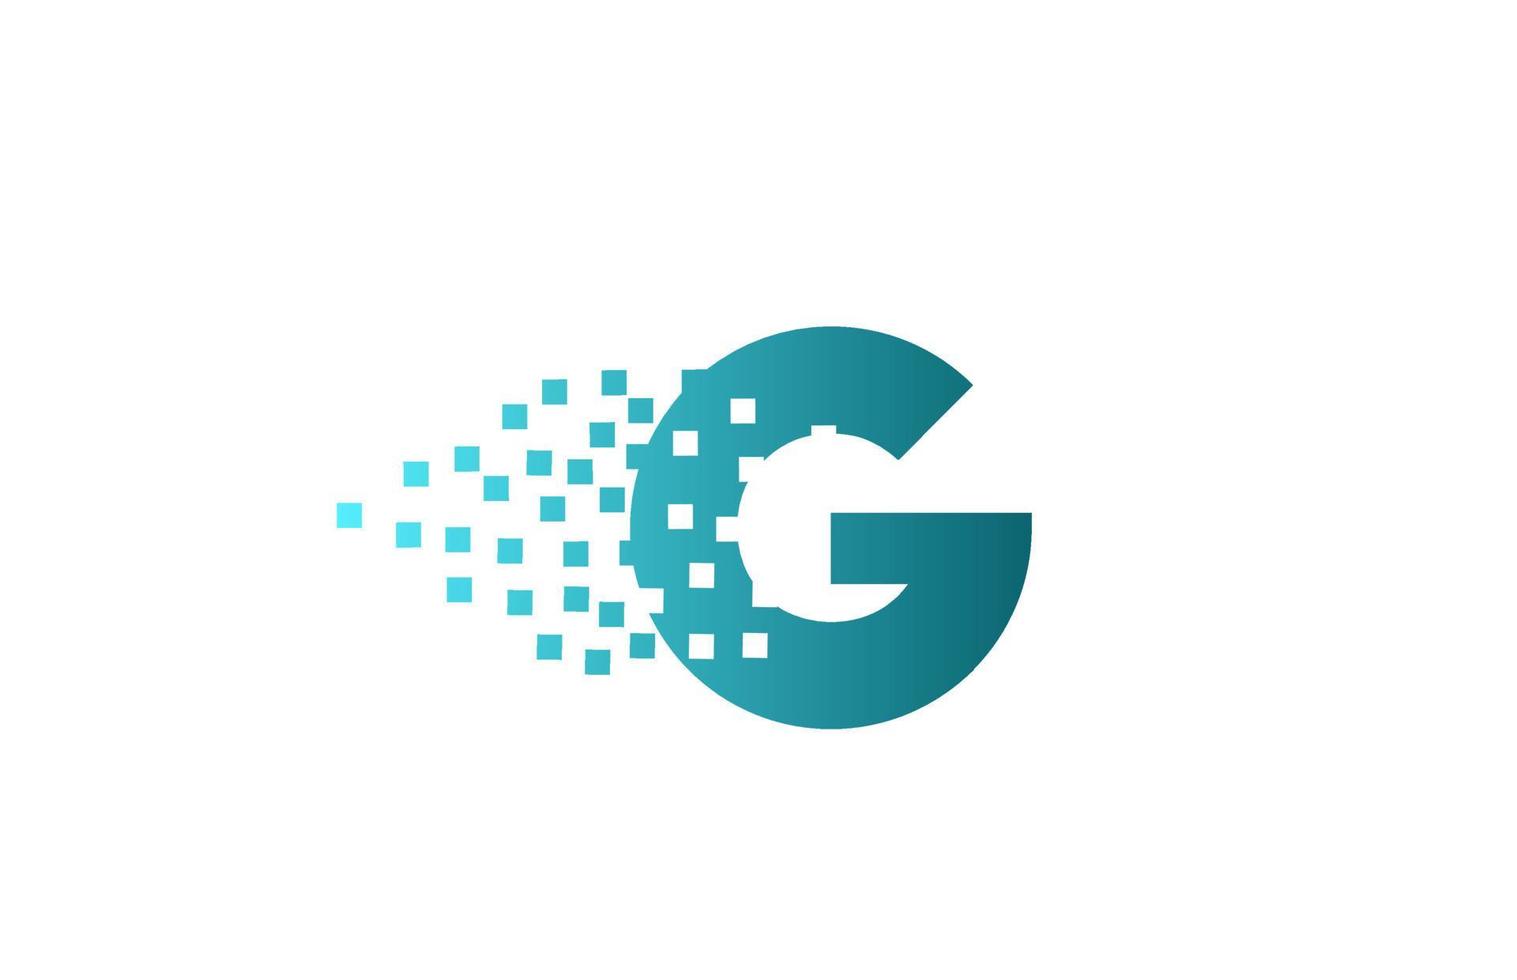 g alfabet letterpictogram logo voor bedrijf en bedrijf. groen geërodeerd pixelontwerp voor huisstijl vector